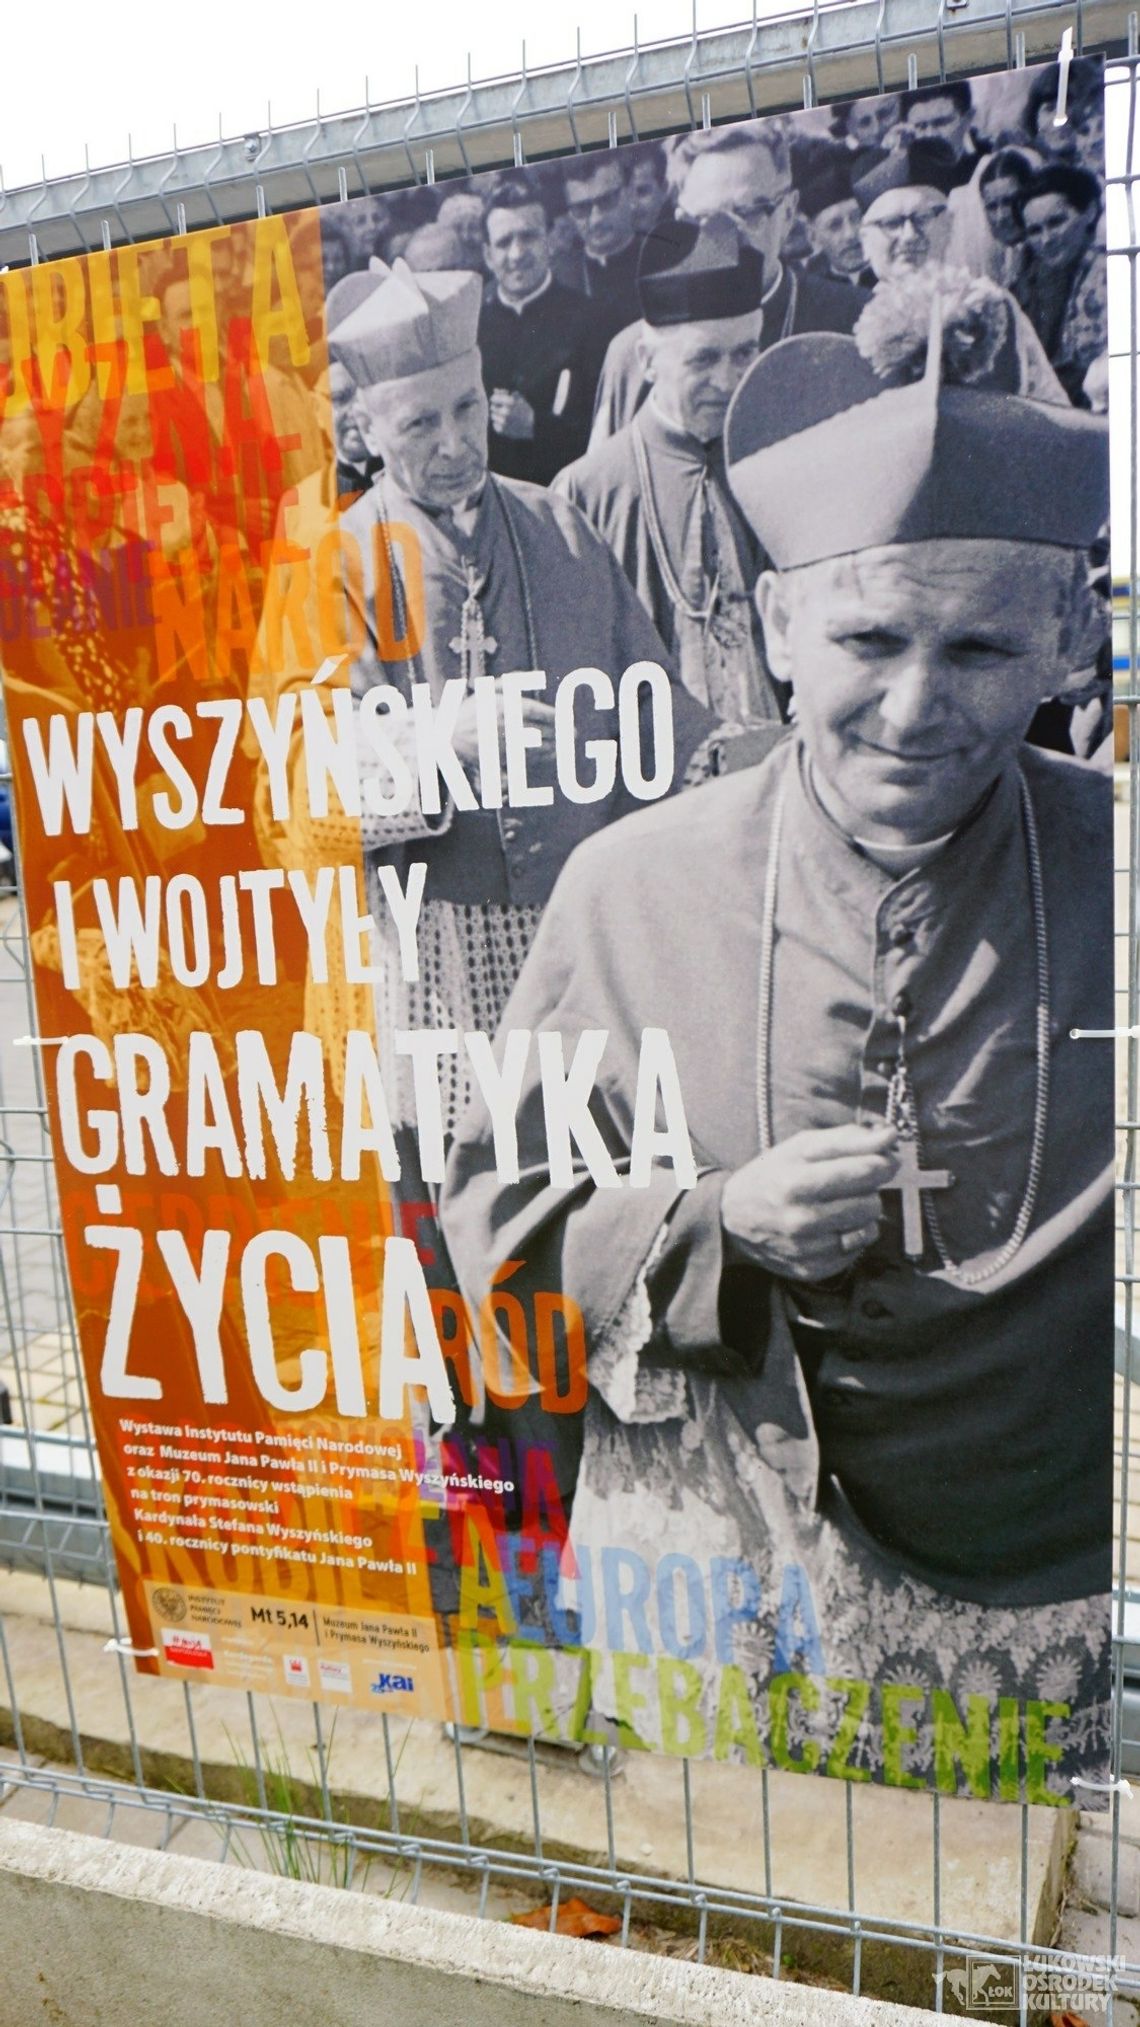 Wystawa przechodnia: „Wyszyńskiego i Wojtyły gramatyka życia” /do 30 września 2021